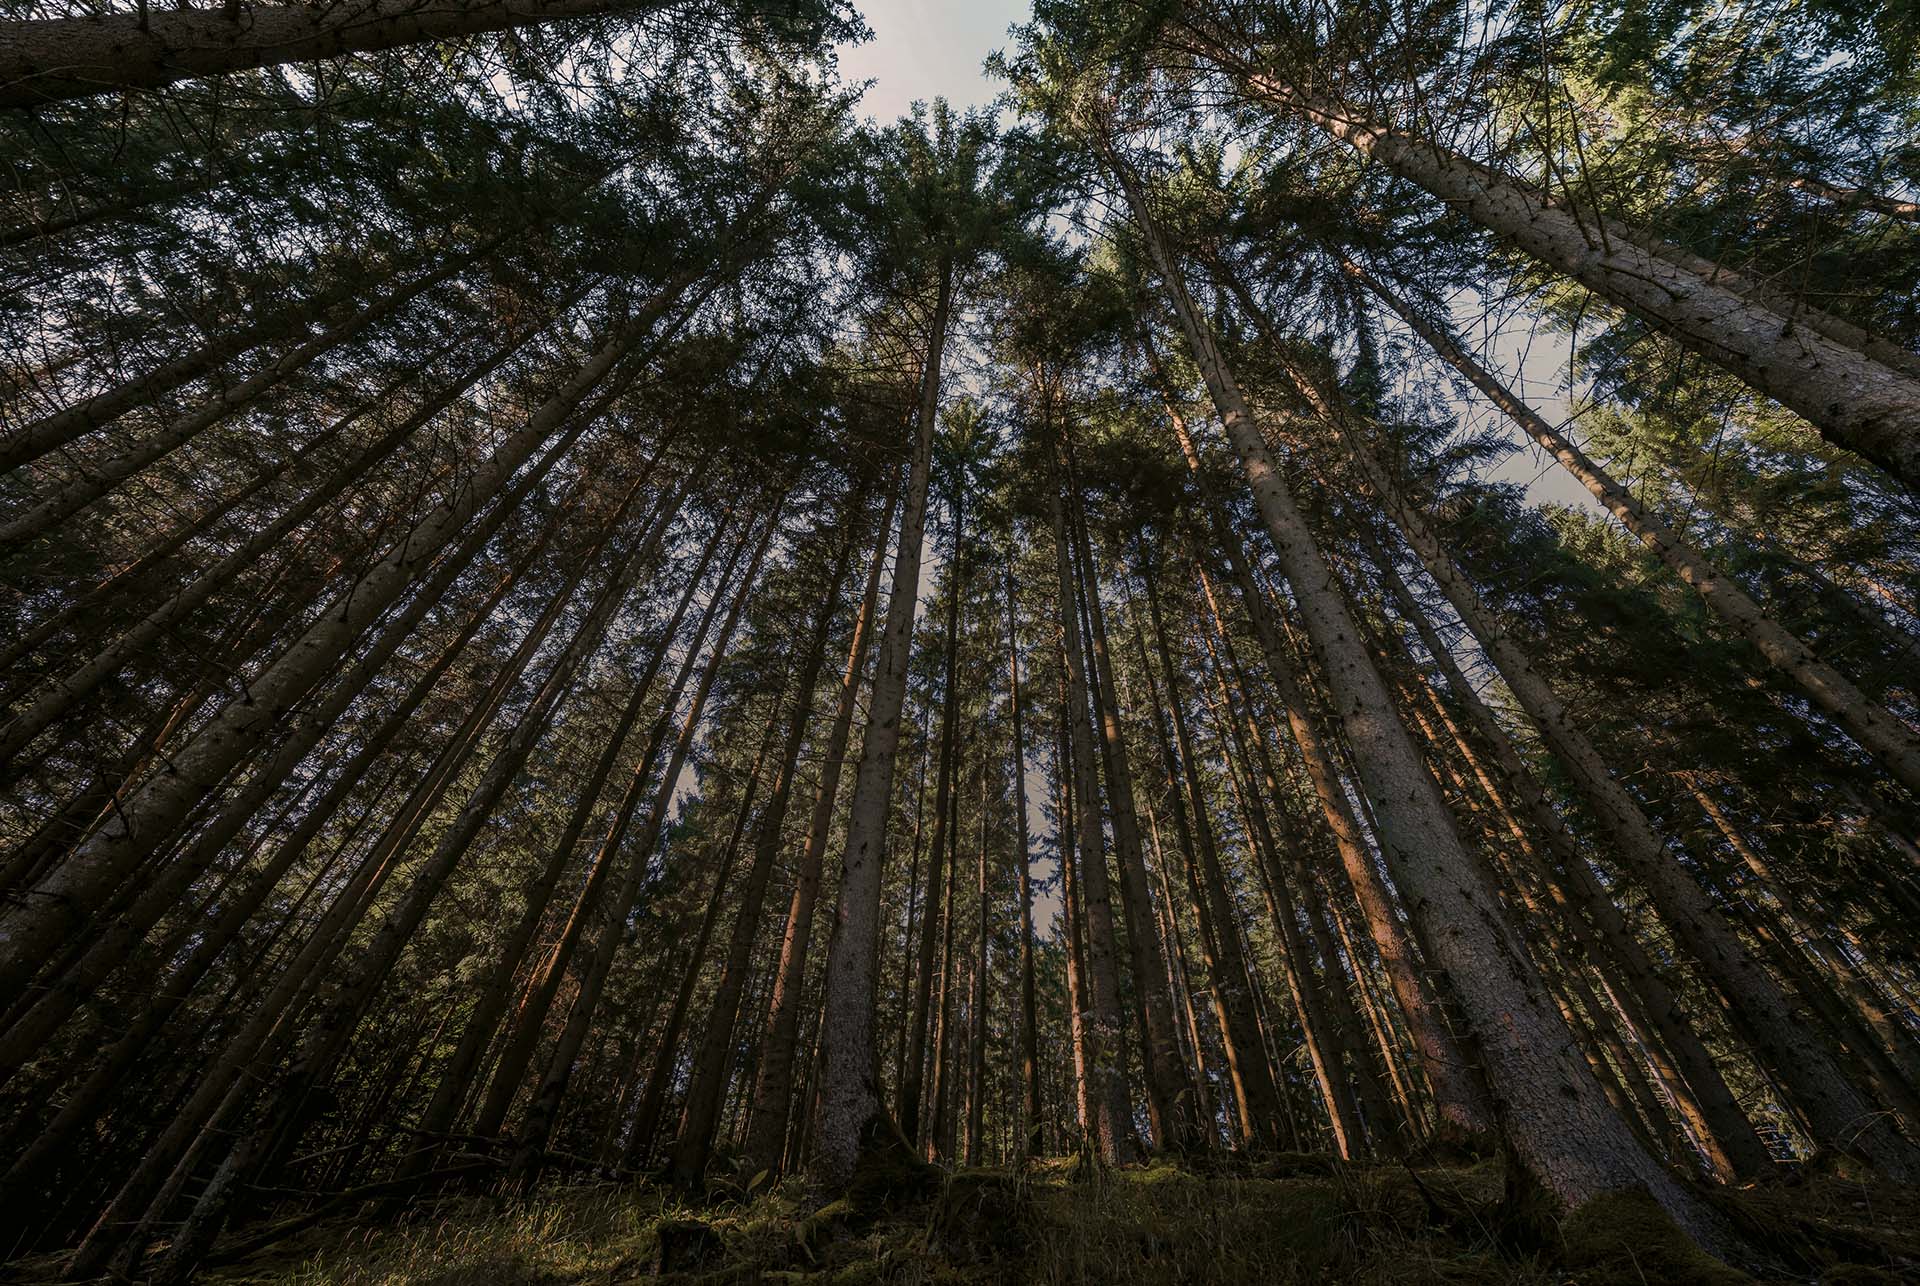 Vista sul bosco con alberi ad alto fusto